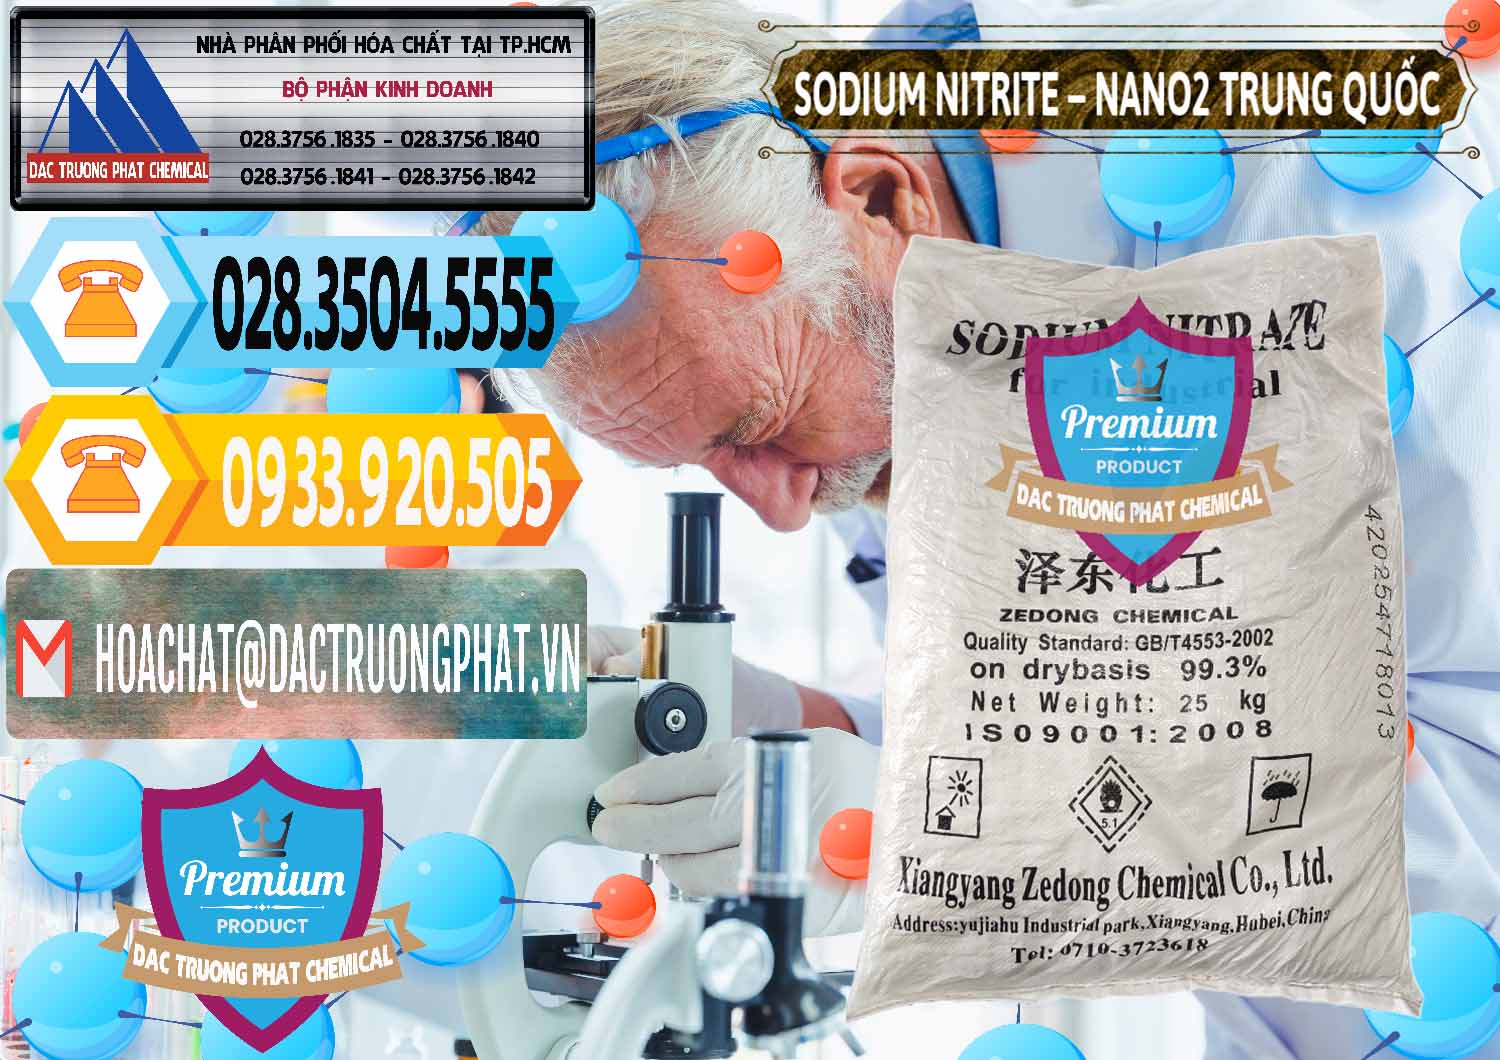 Cty nhập khẩu & bán Sodium Nitrite - NANO2 Zedong Trung Quốc China - 0149 - Đơn vị bán và phân phối hóa chất tại TP.HCM - hoachattayrua.net